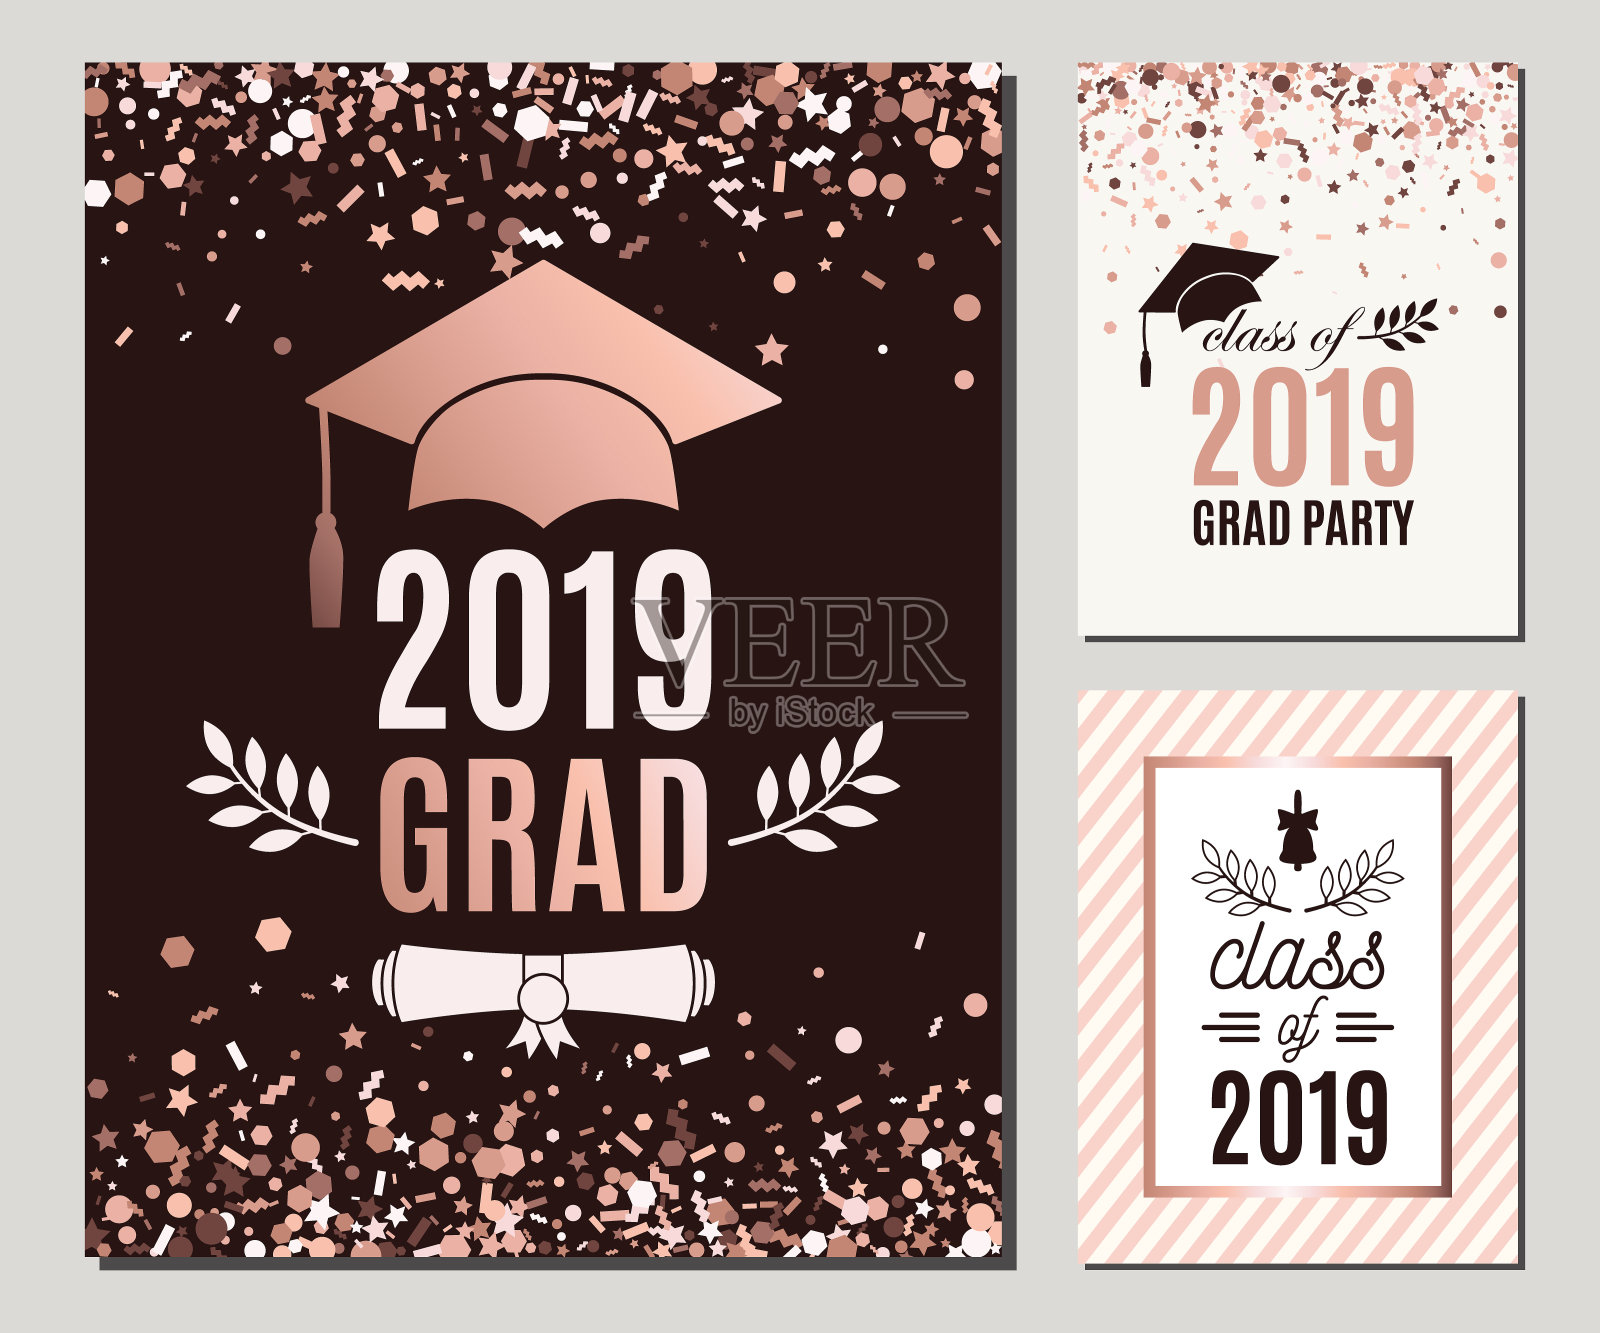 2019届毕业生的贺卡采用玫瑰金五彩纸屑颜色。三份矢量毕业生派对邀请函。毕业生海报。都是隔离和分层的设计模板素材